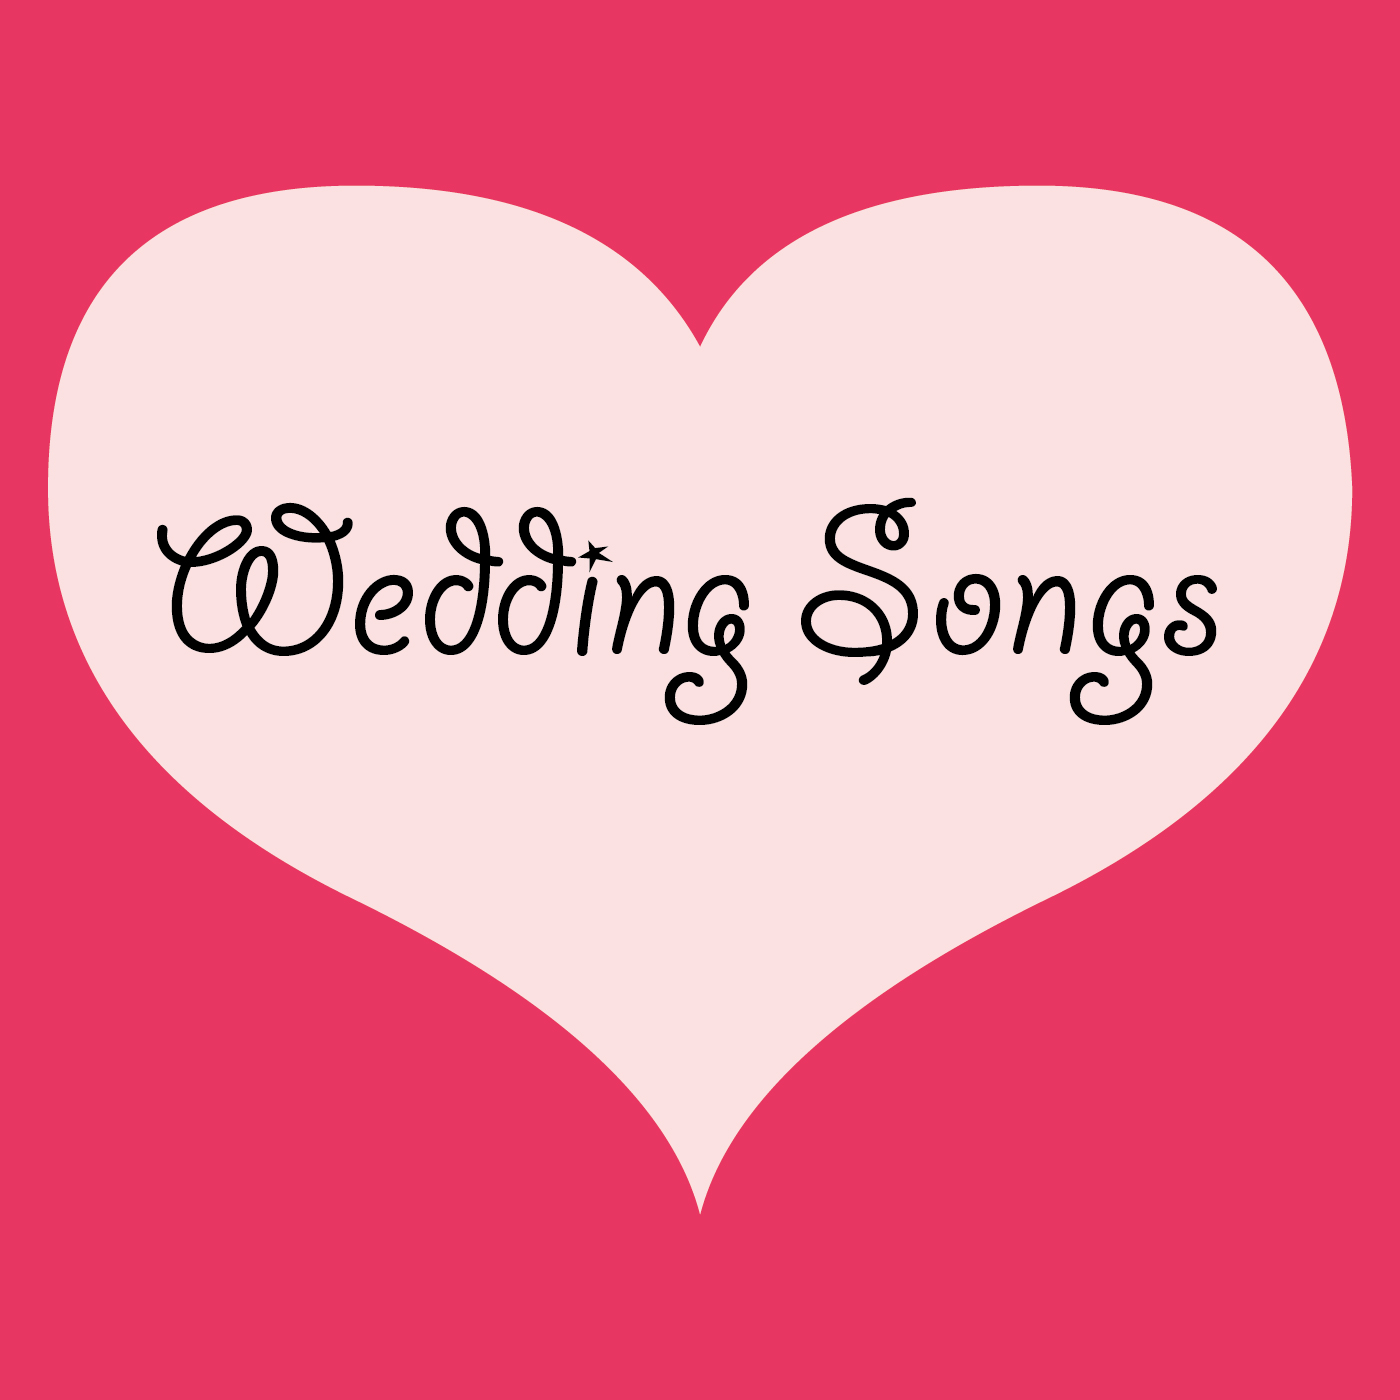 Wedding songs